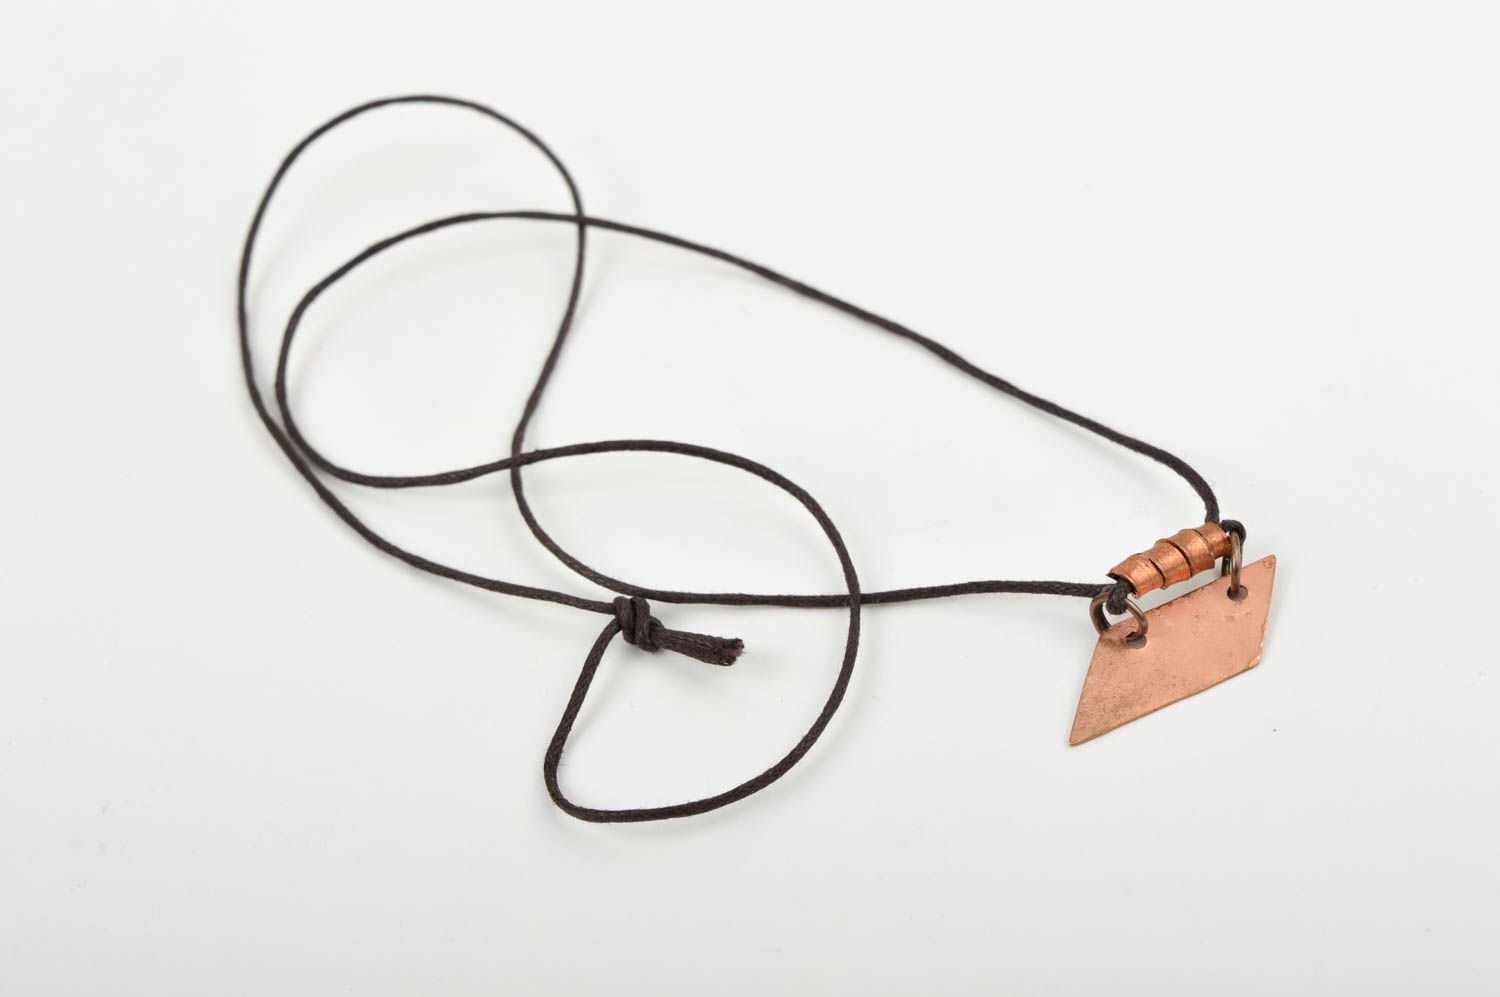 Handmade pendant for gift unusual copper pendant designer cute accessory photo 4